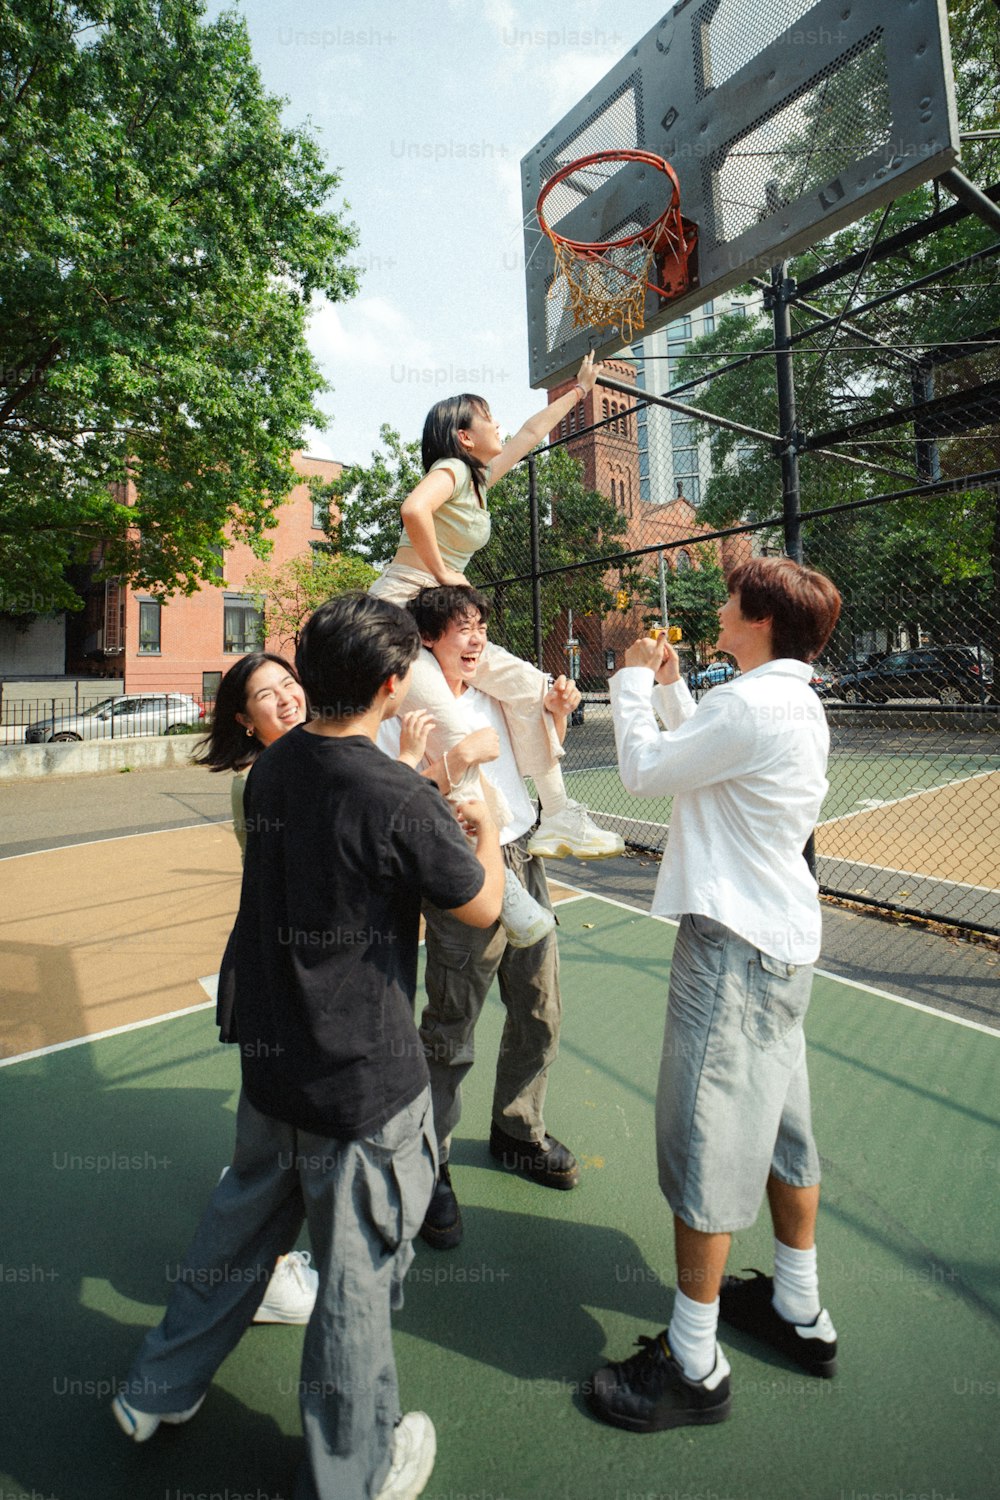 Un grupo de personas de pie encima de una cancha de baloncesto